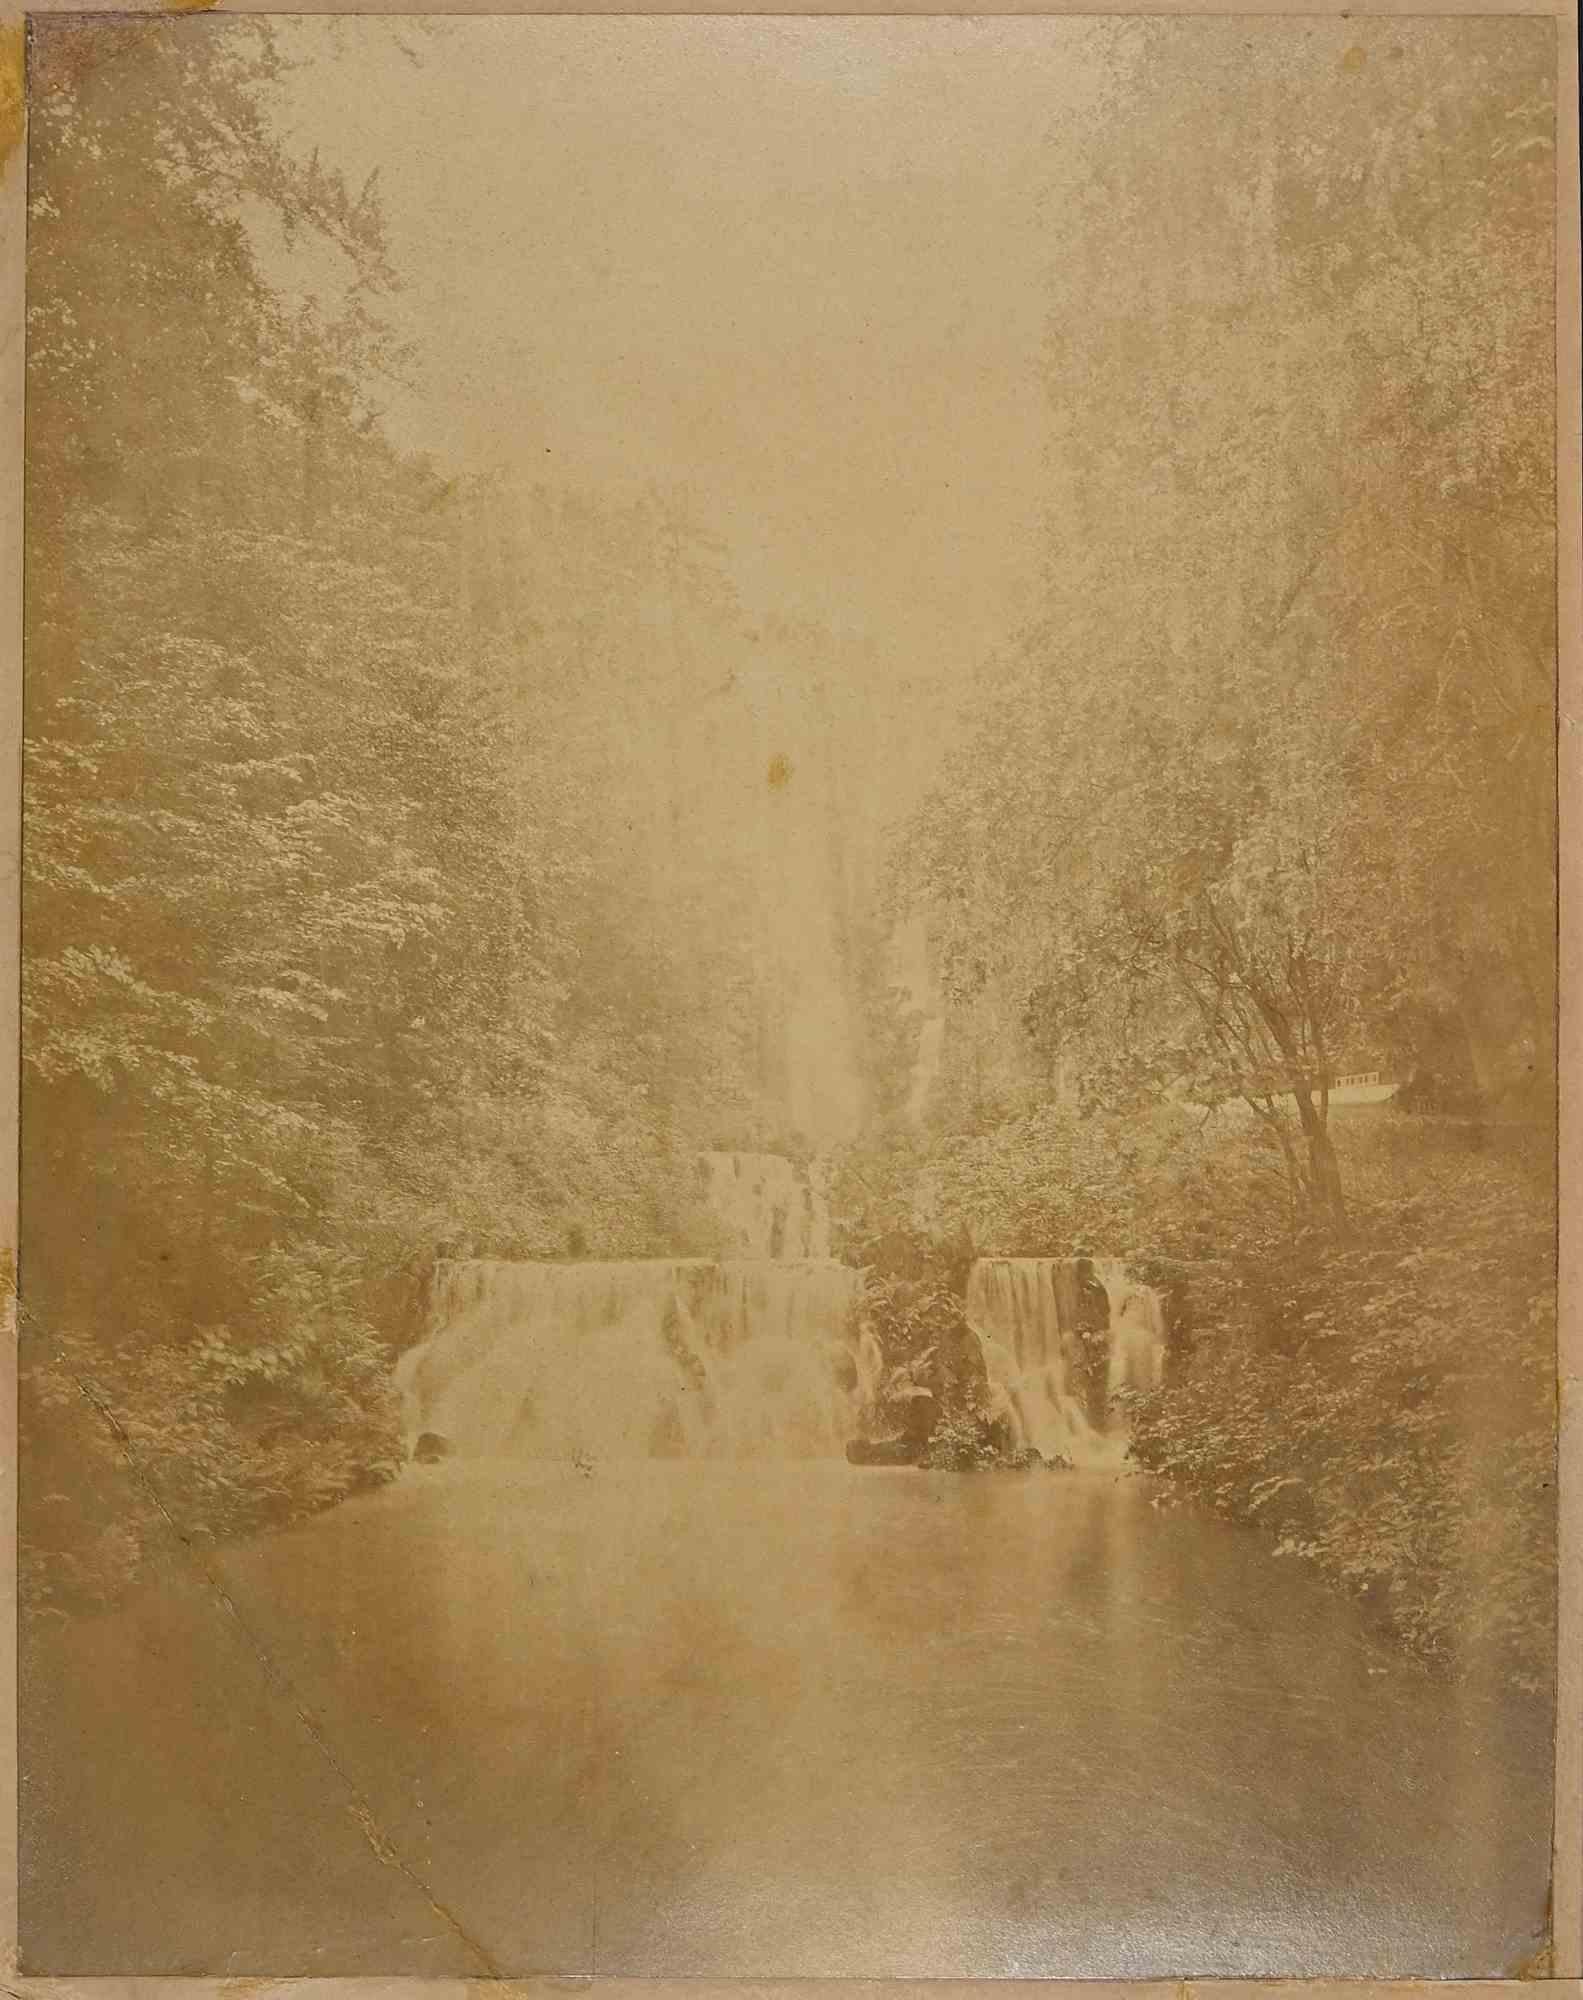 Unknown Landscape Photograph – Herbst – Vintage-Fotografie des späten 19. Jahrhunderts